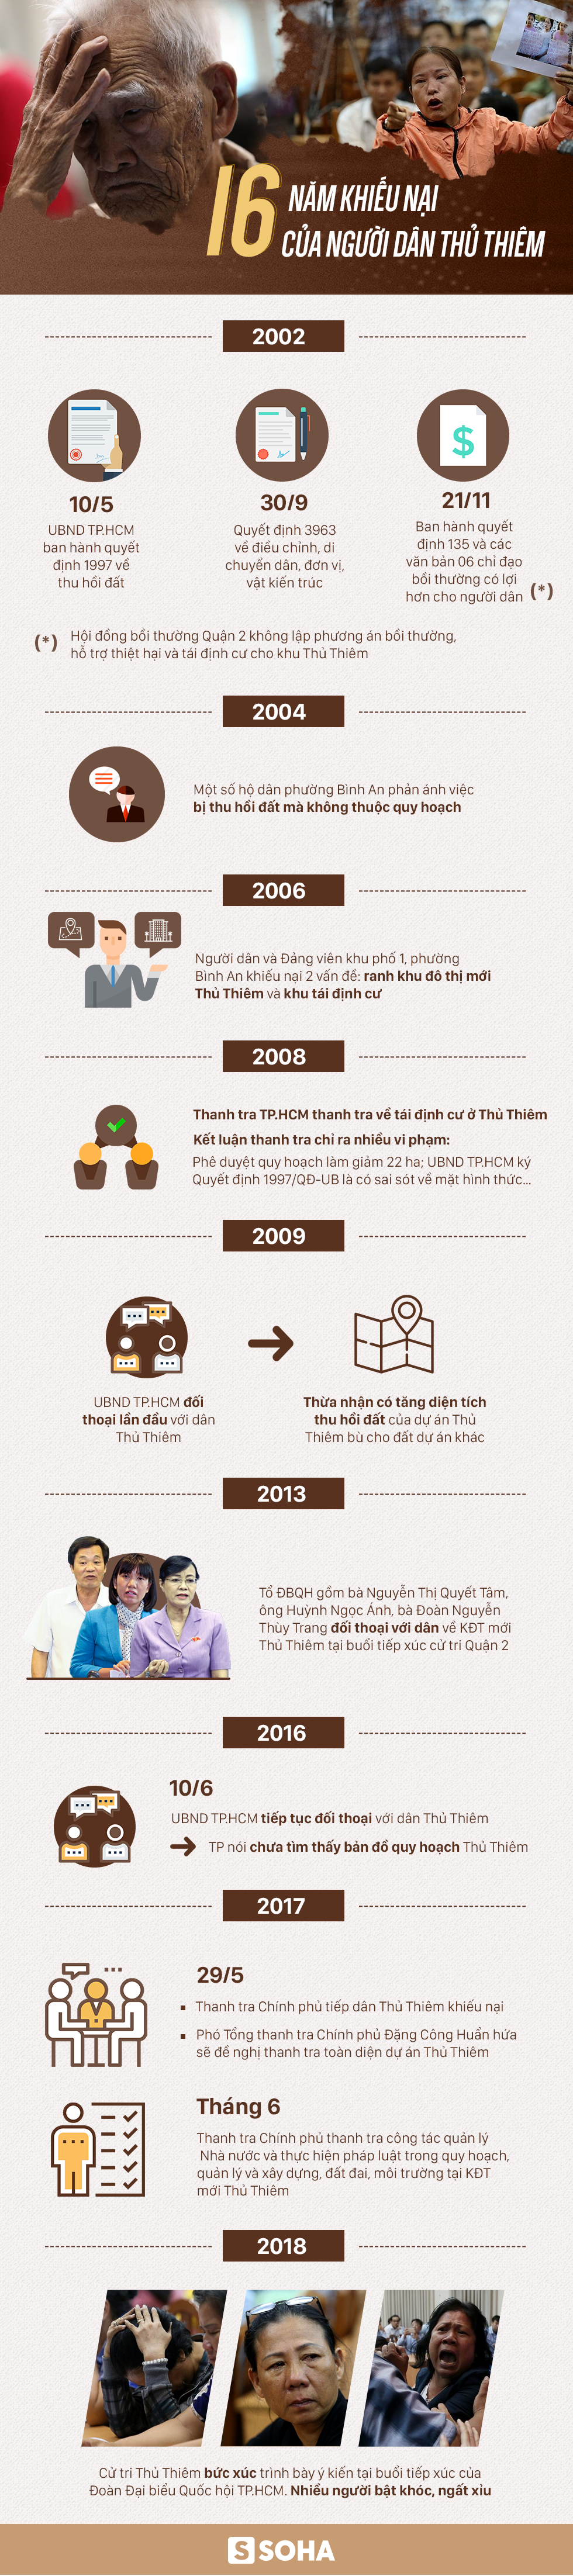 Infographic: 16 năm khiếu nại của người dân Thủ Thiêm - Ảnh 1.